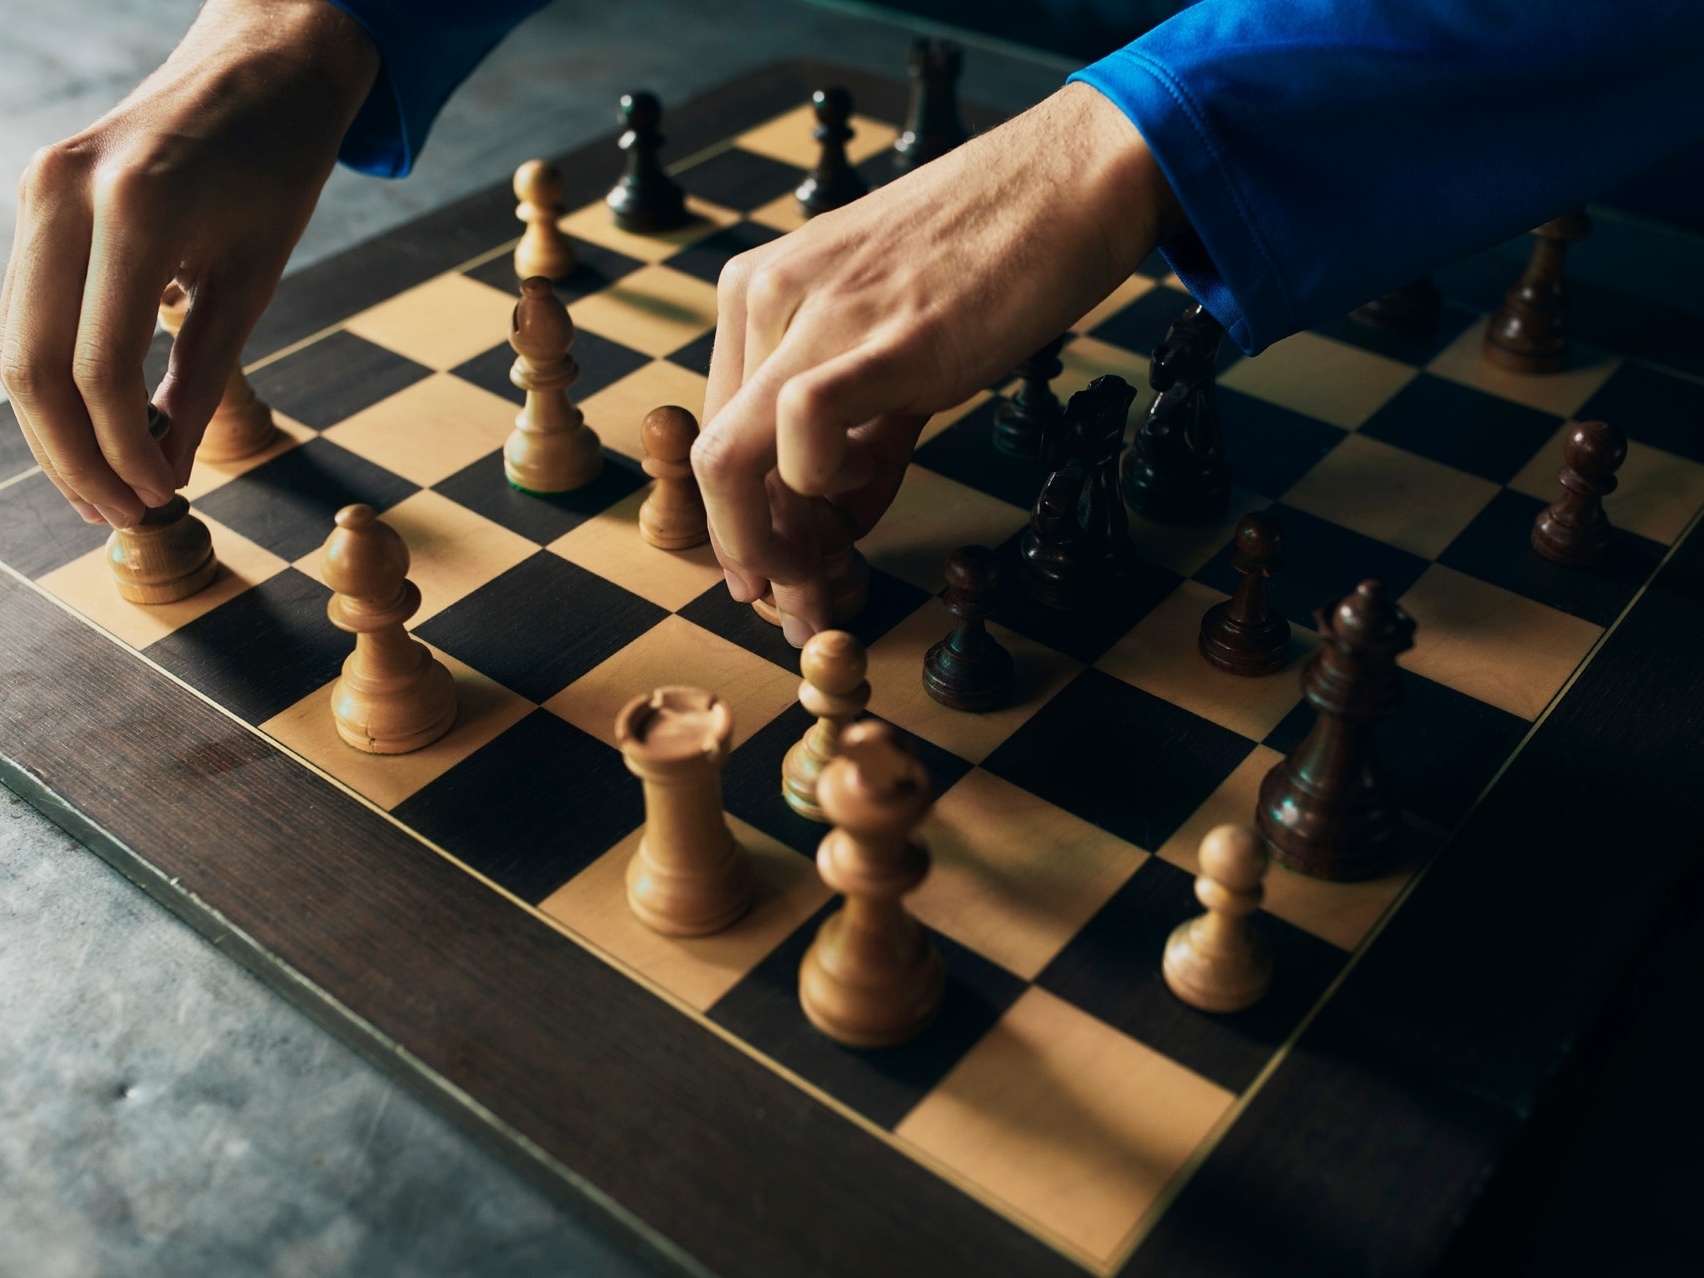 O Gambito da Rainha põe xadrez em alta e dá luz a debate sobre machismo no  esporte, outros esportes